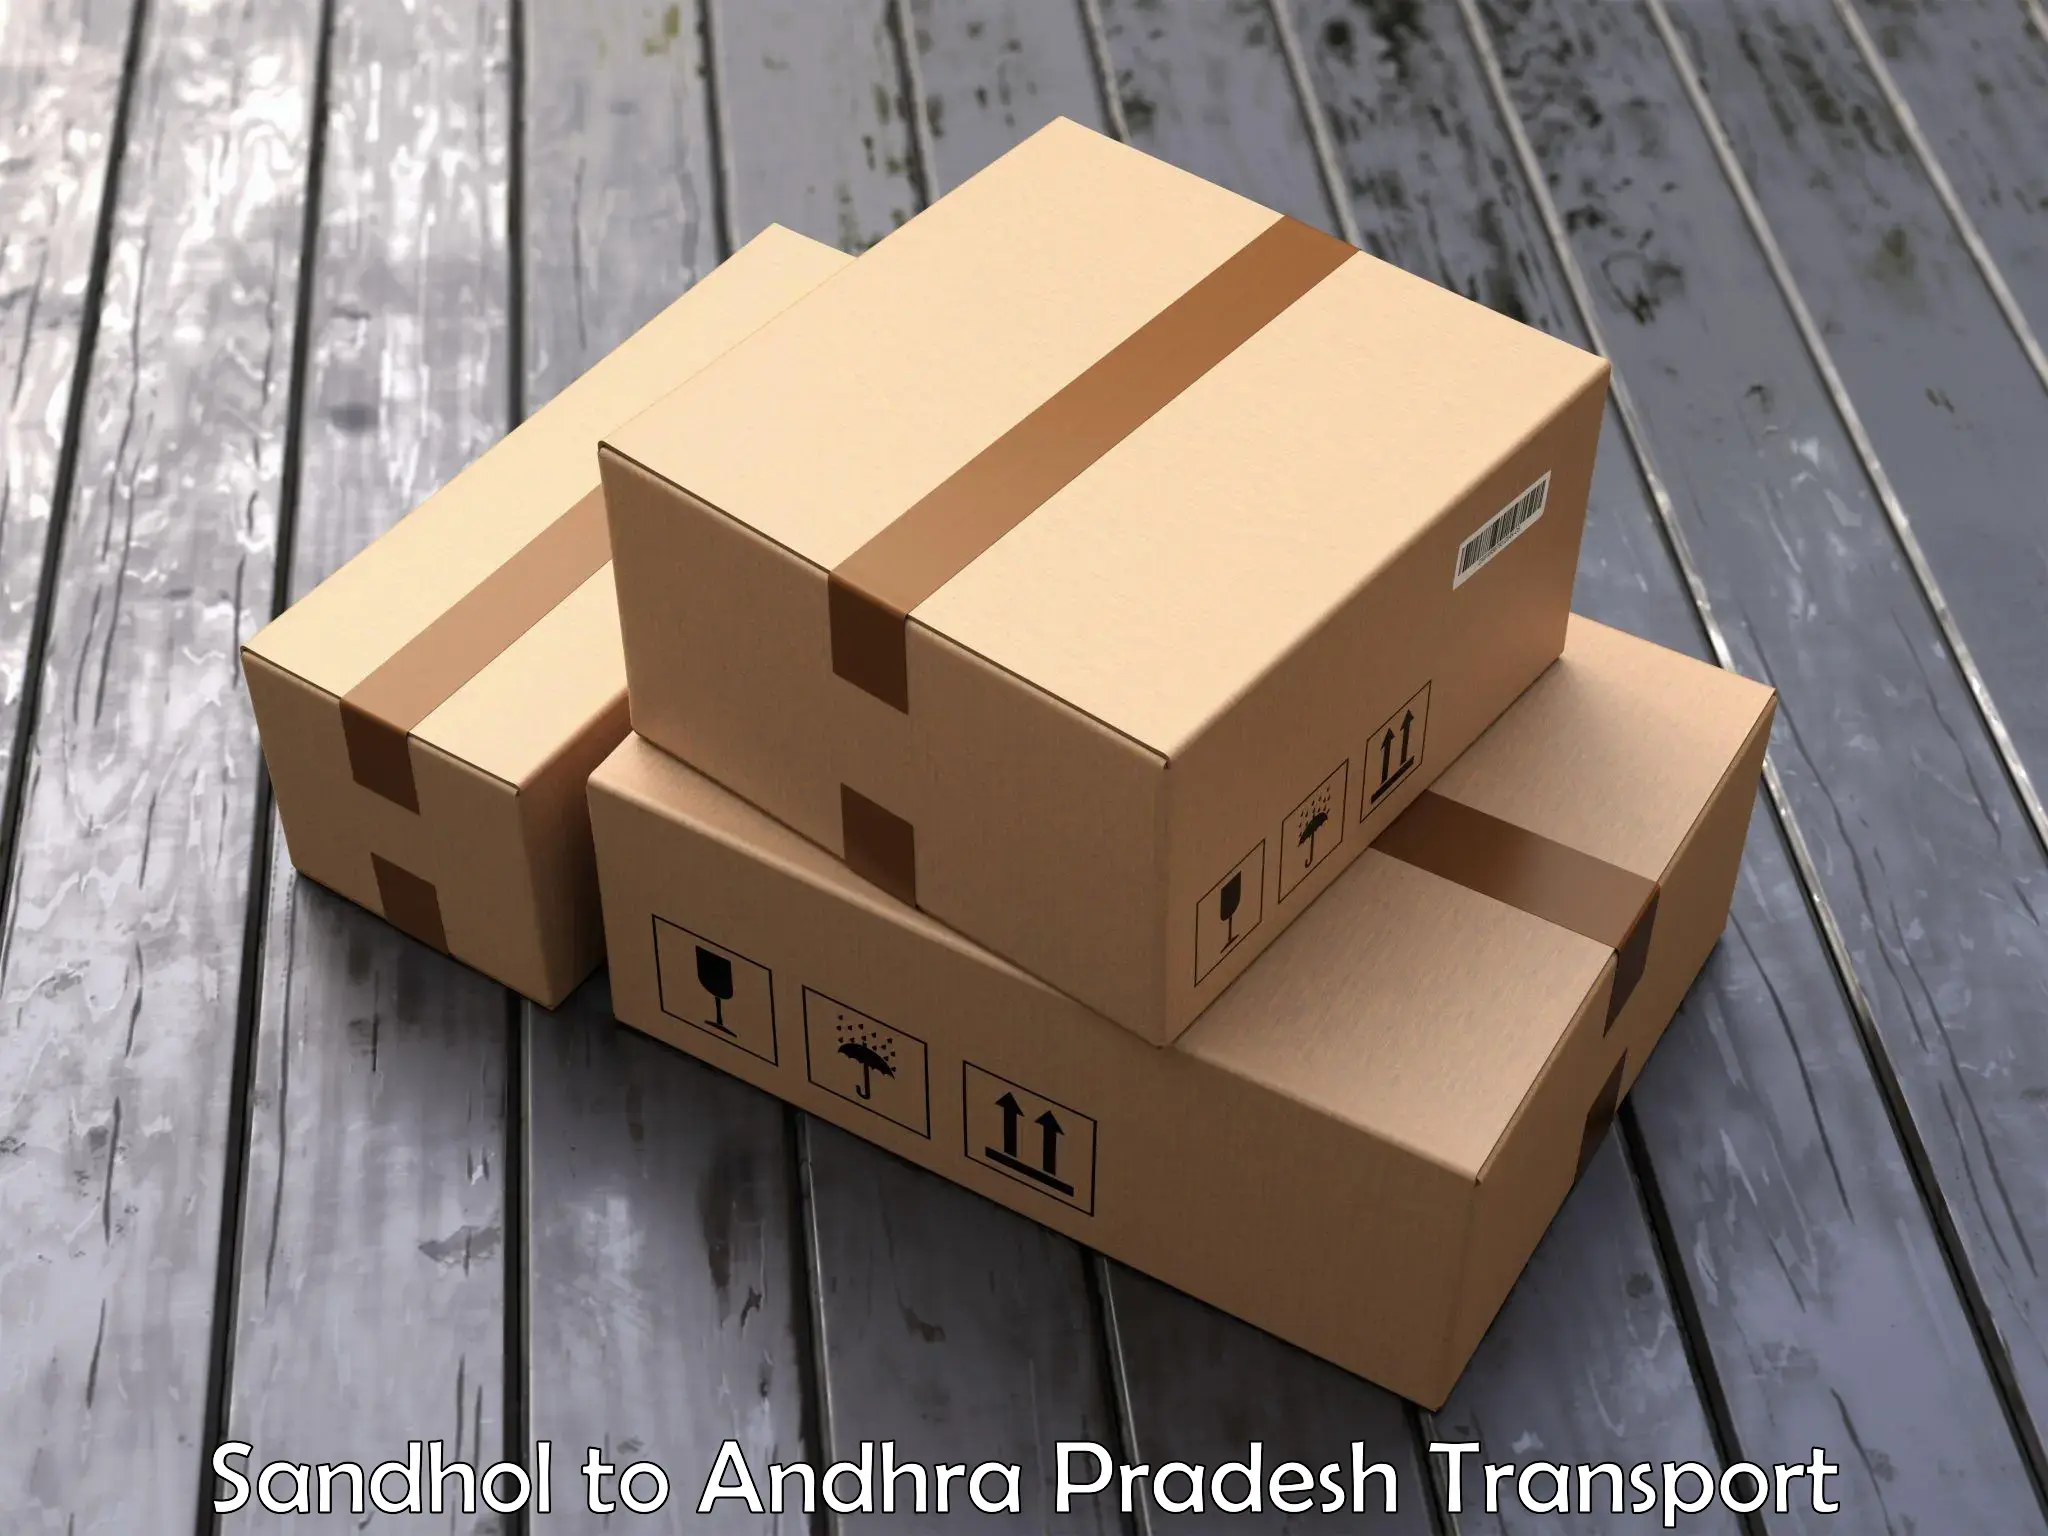 Goods delivery service Sandhol to Rajahmundry